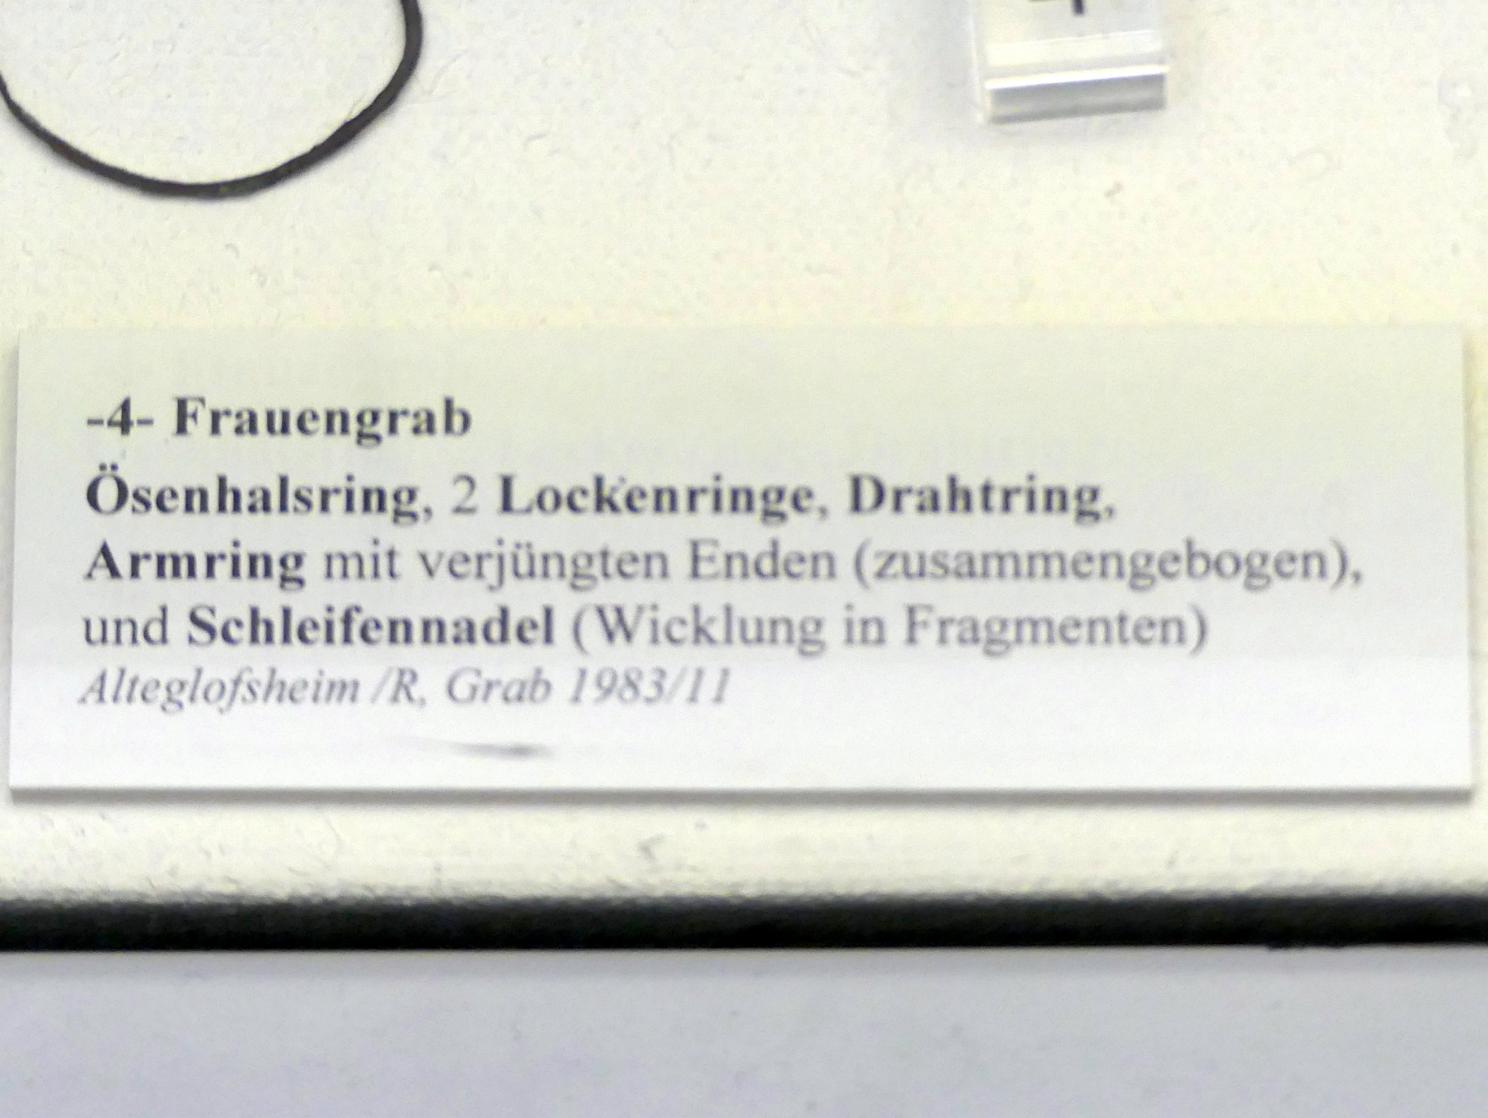 Armring mit verjüngten Enden (zusammengebogen), Frühe Bronzezeit, 3365 - 1200 v. Chr., Bild 2/2